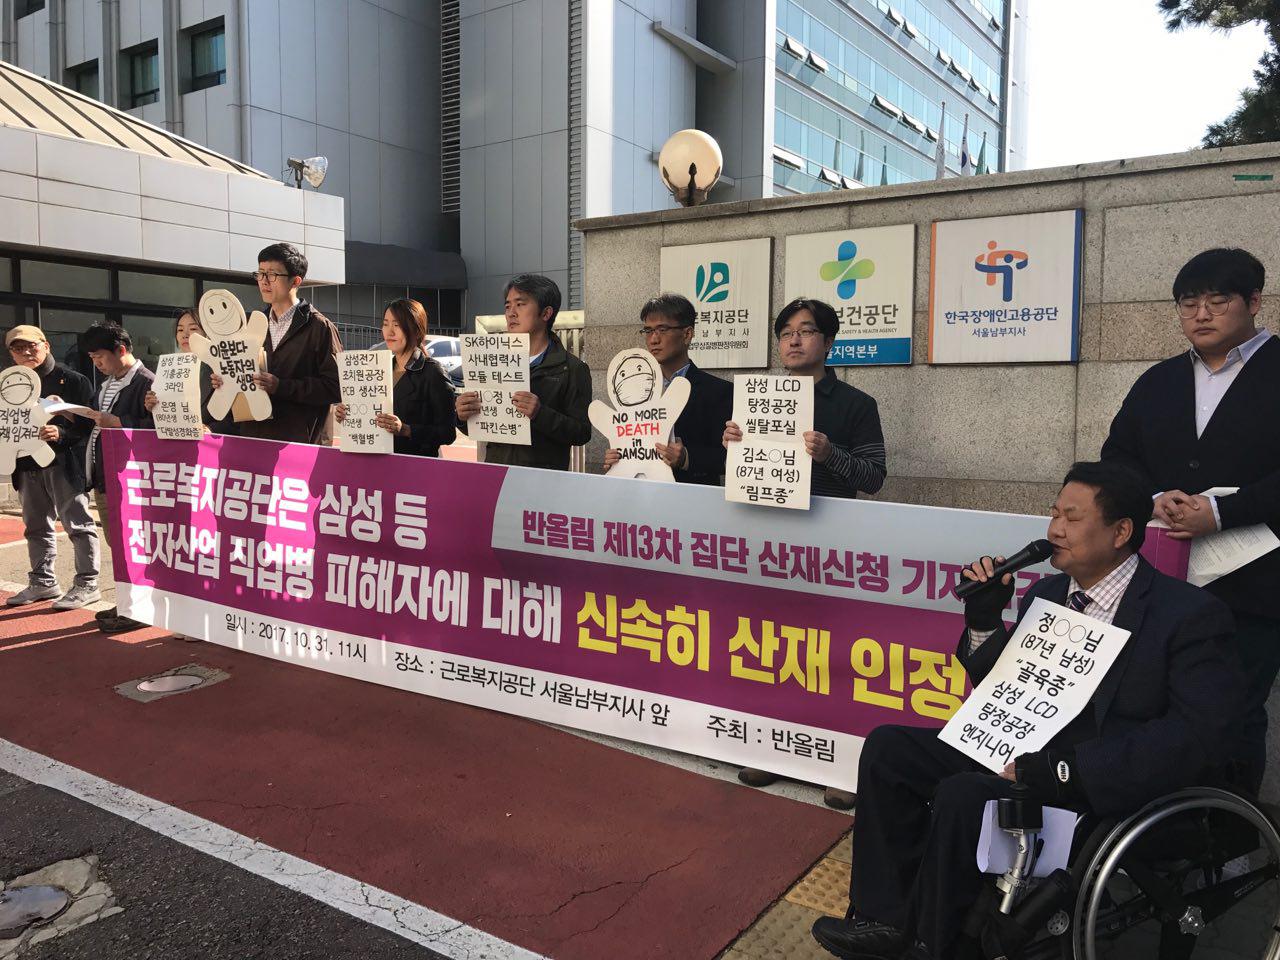 "근로복지공단은 삼성 등 전자산업 직업병 피해자에 대해 신속히 산재 인정하라." 지난 10월 31일(화) 반올림의 제13차 집단 산재신청 기자회견이 열렸다.